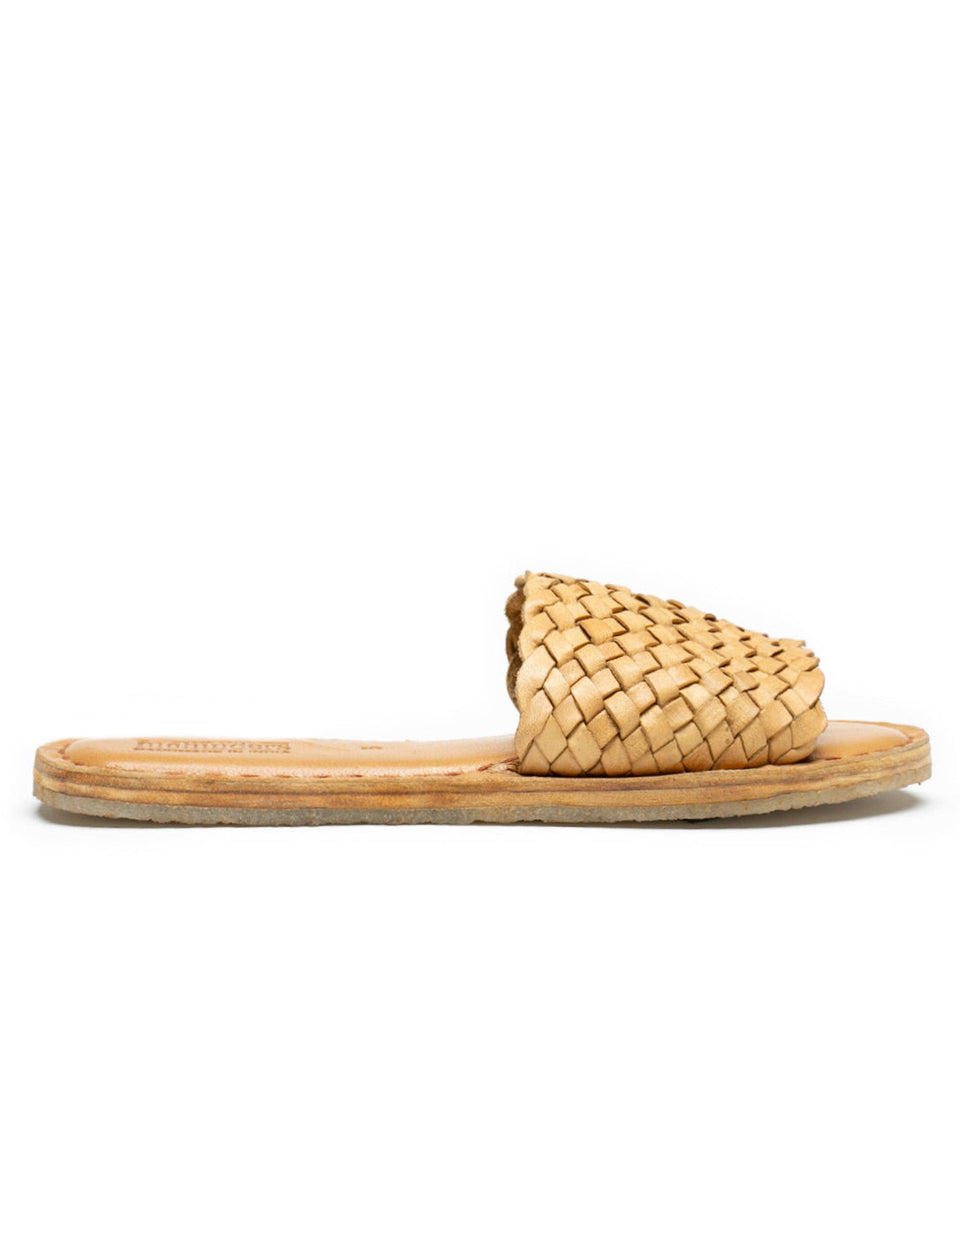 Woven Sandal - Honey